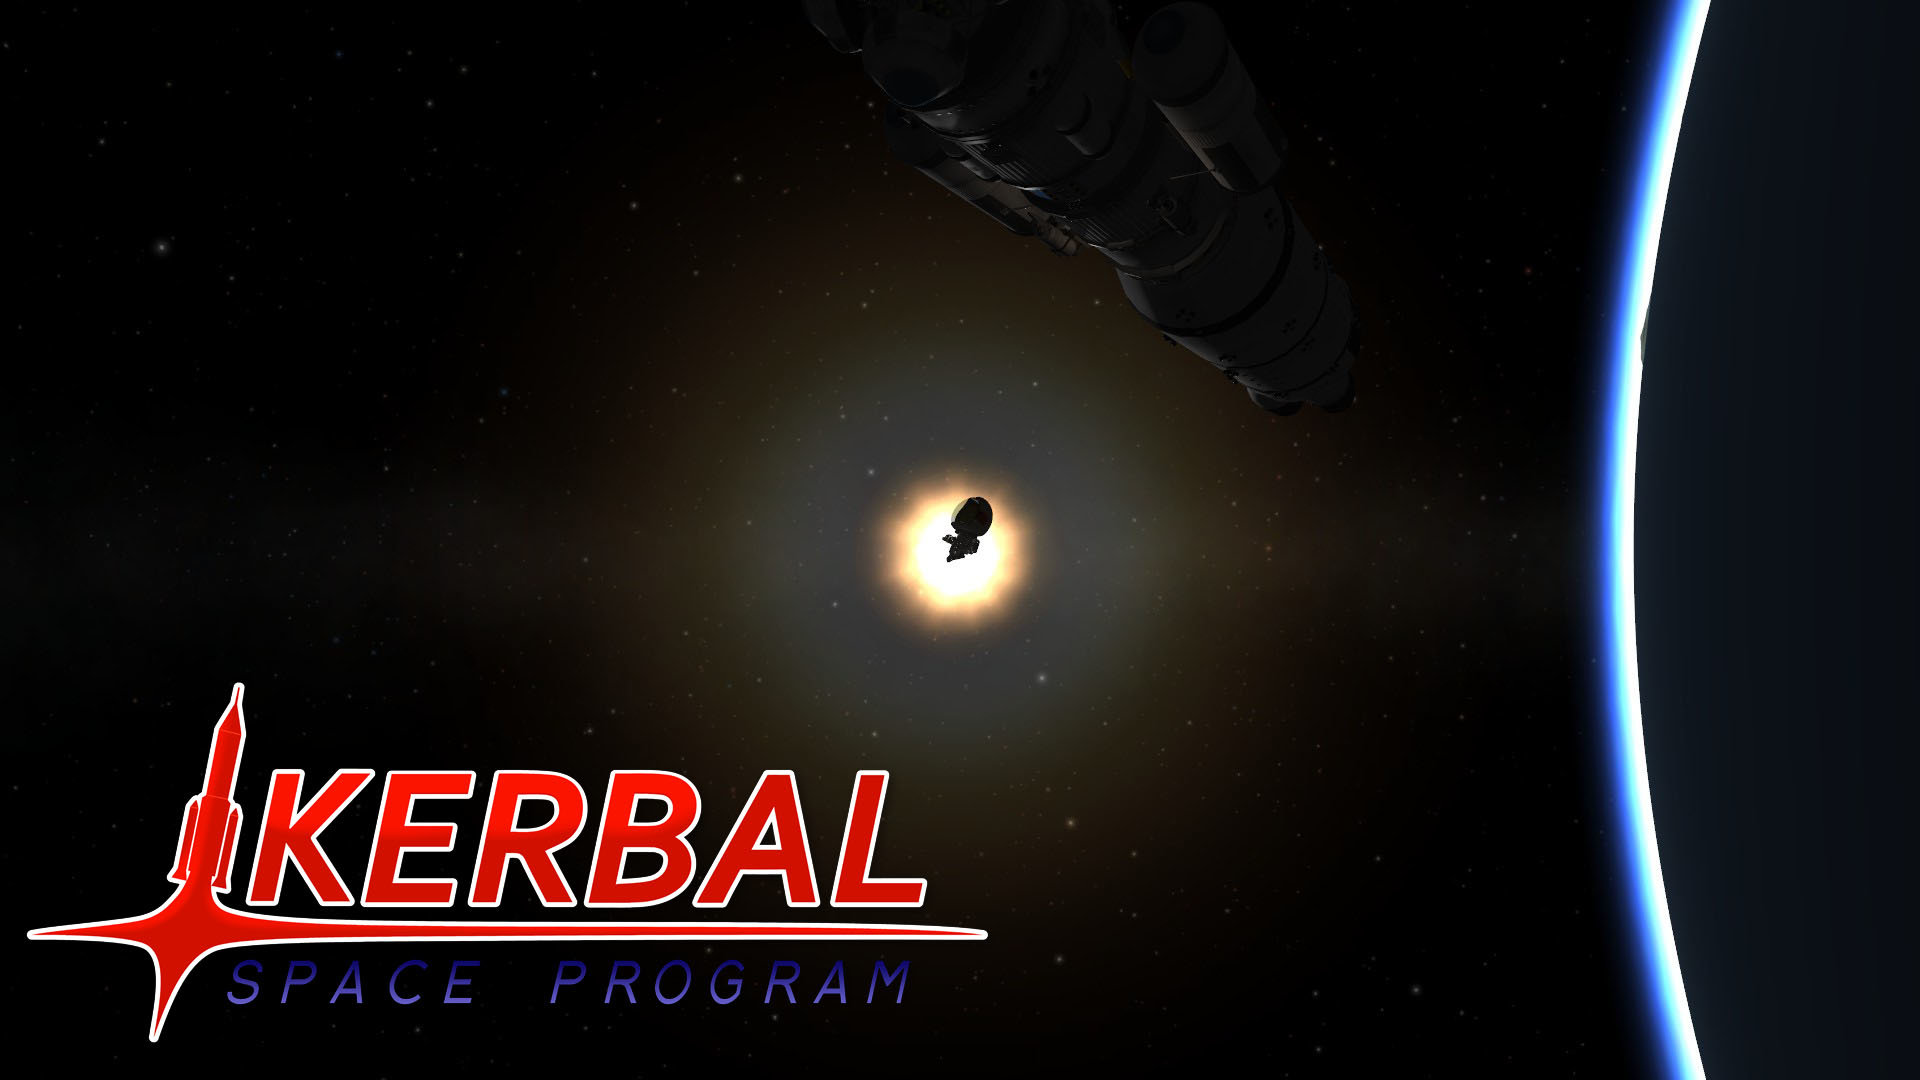 kerbal space program free igg